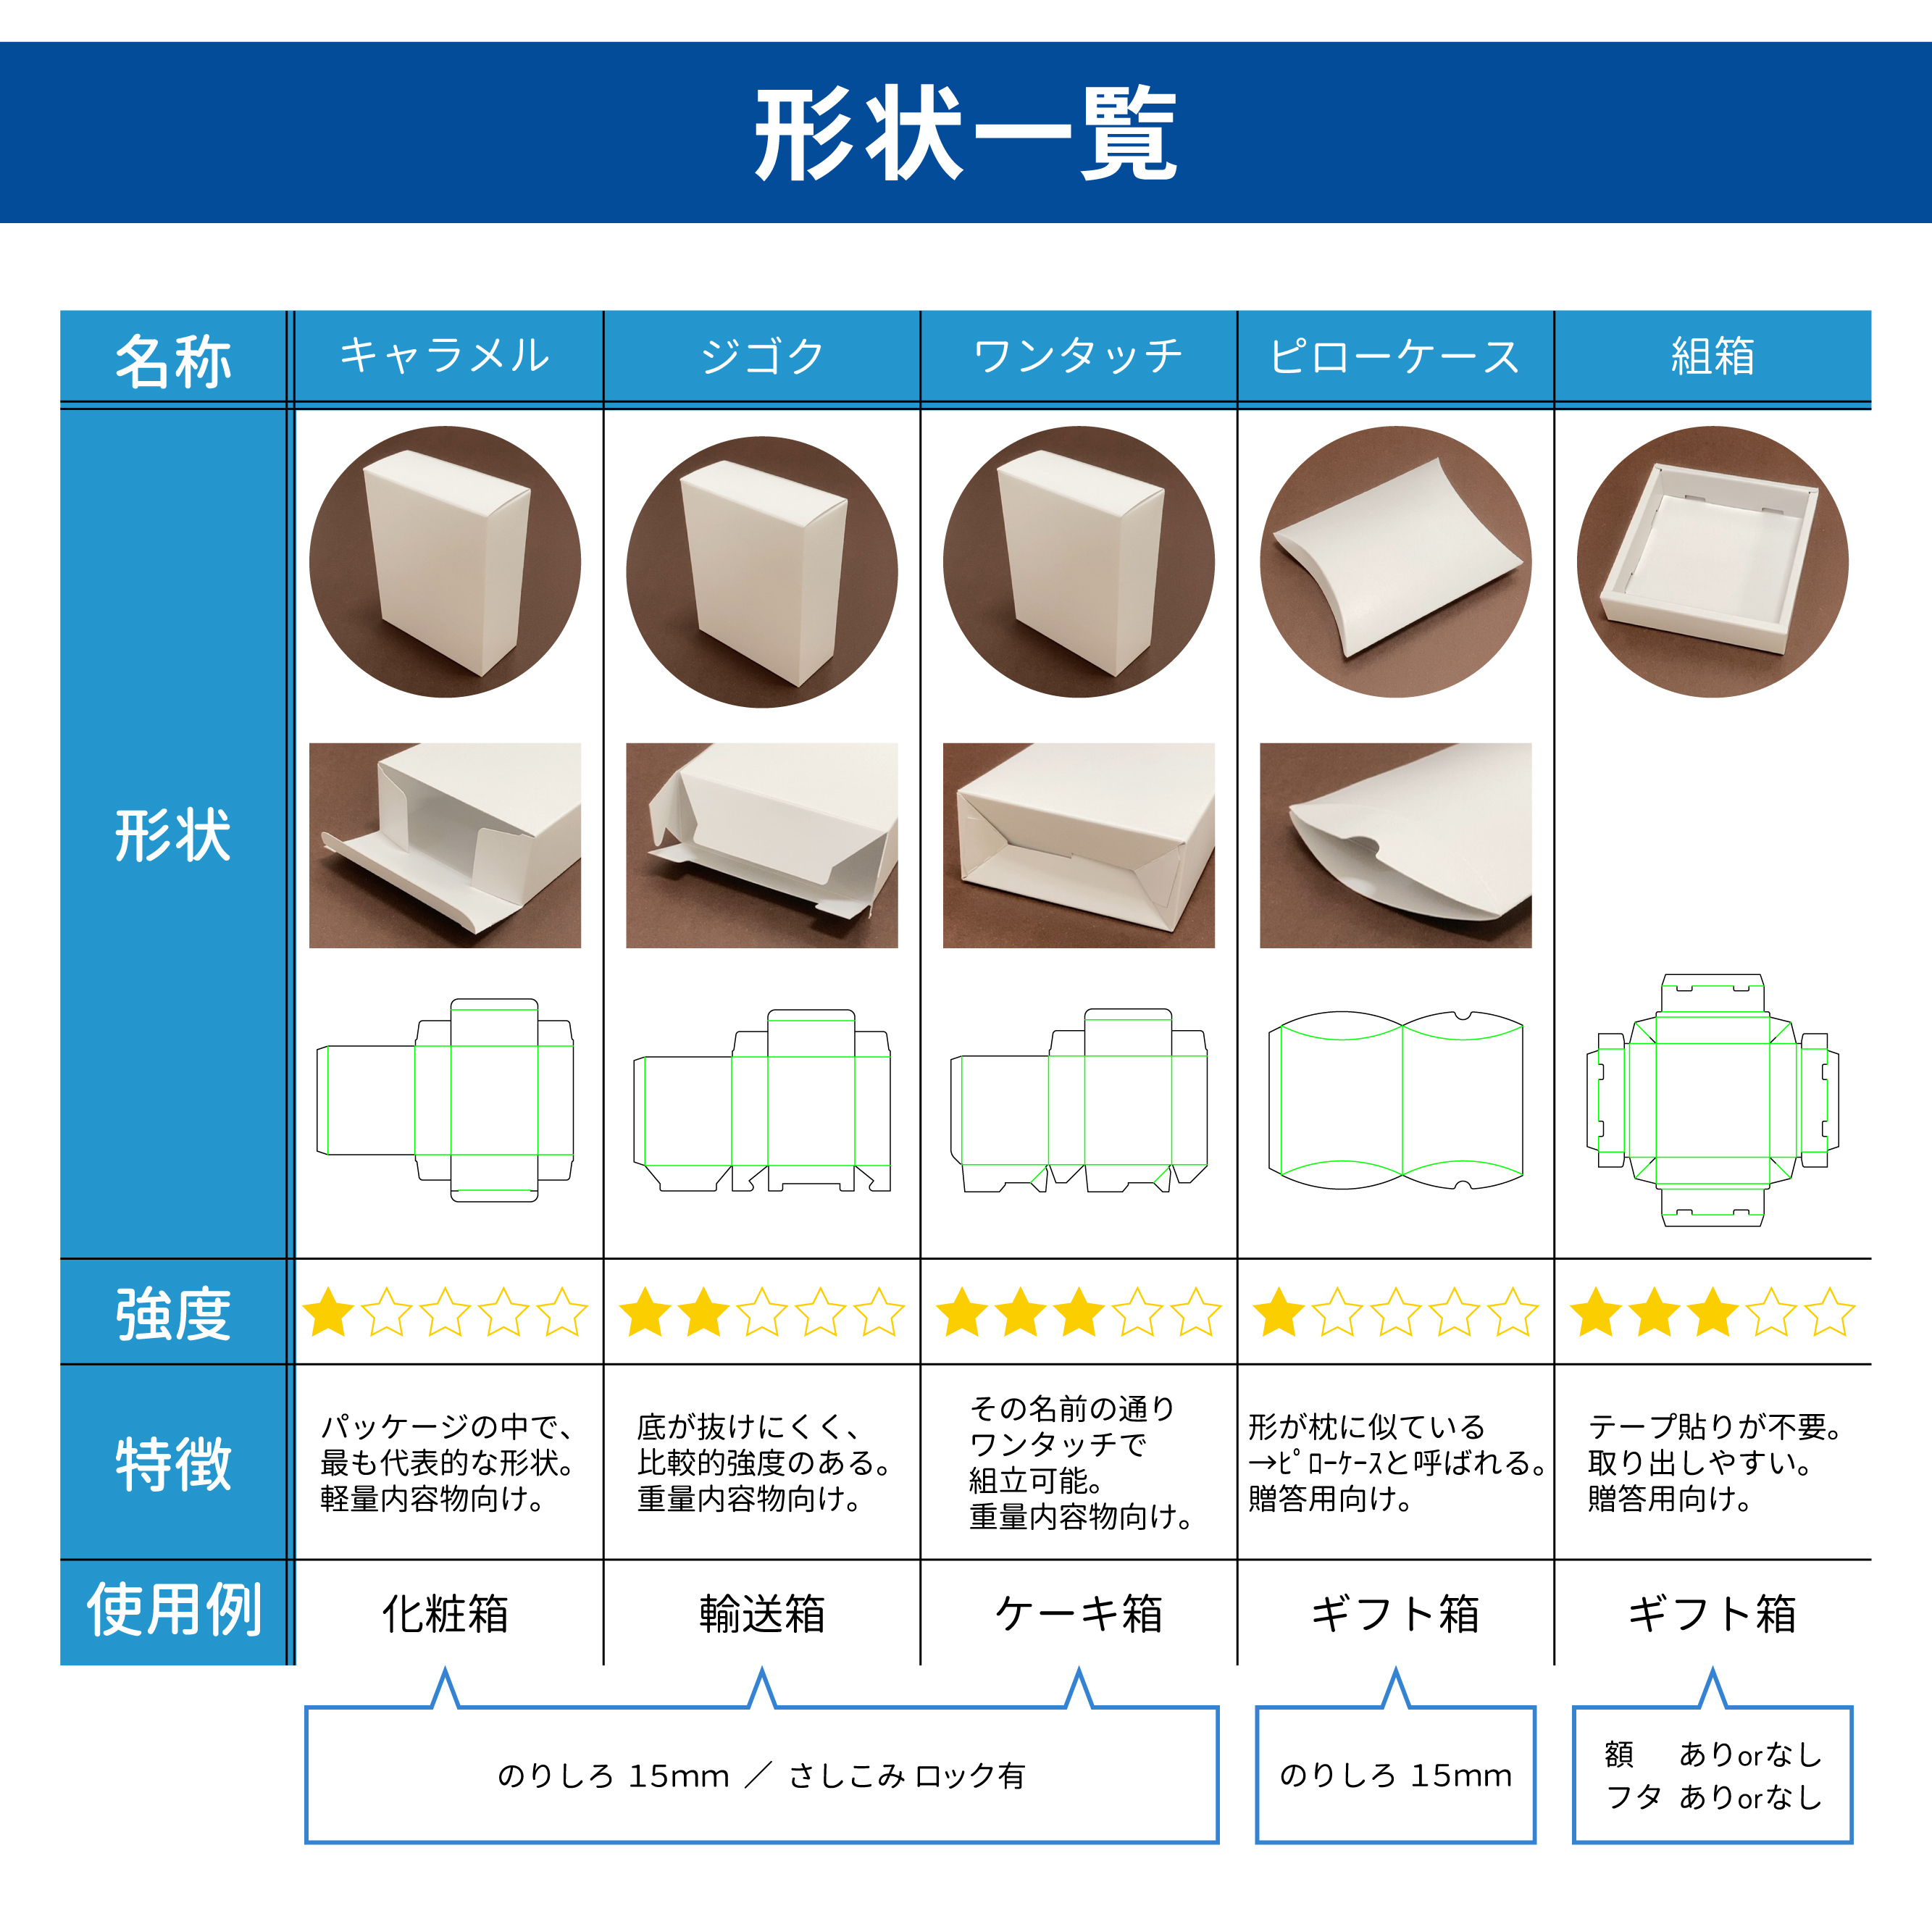 設計図 パッケージ展開図のみの販売 東京チャネルデザイン パッケージ ディスプレイのお店